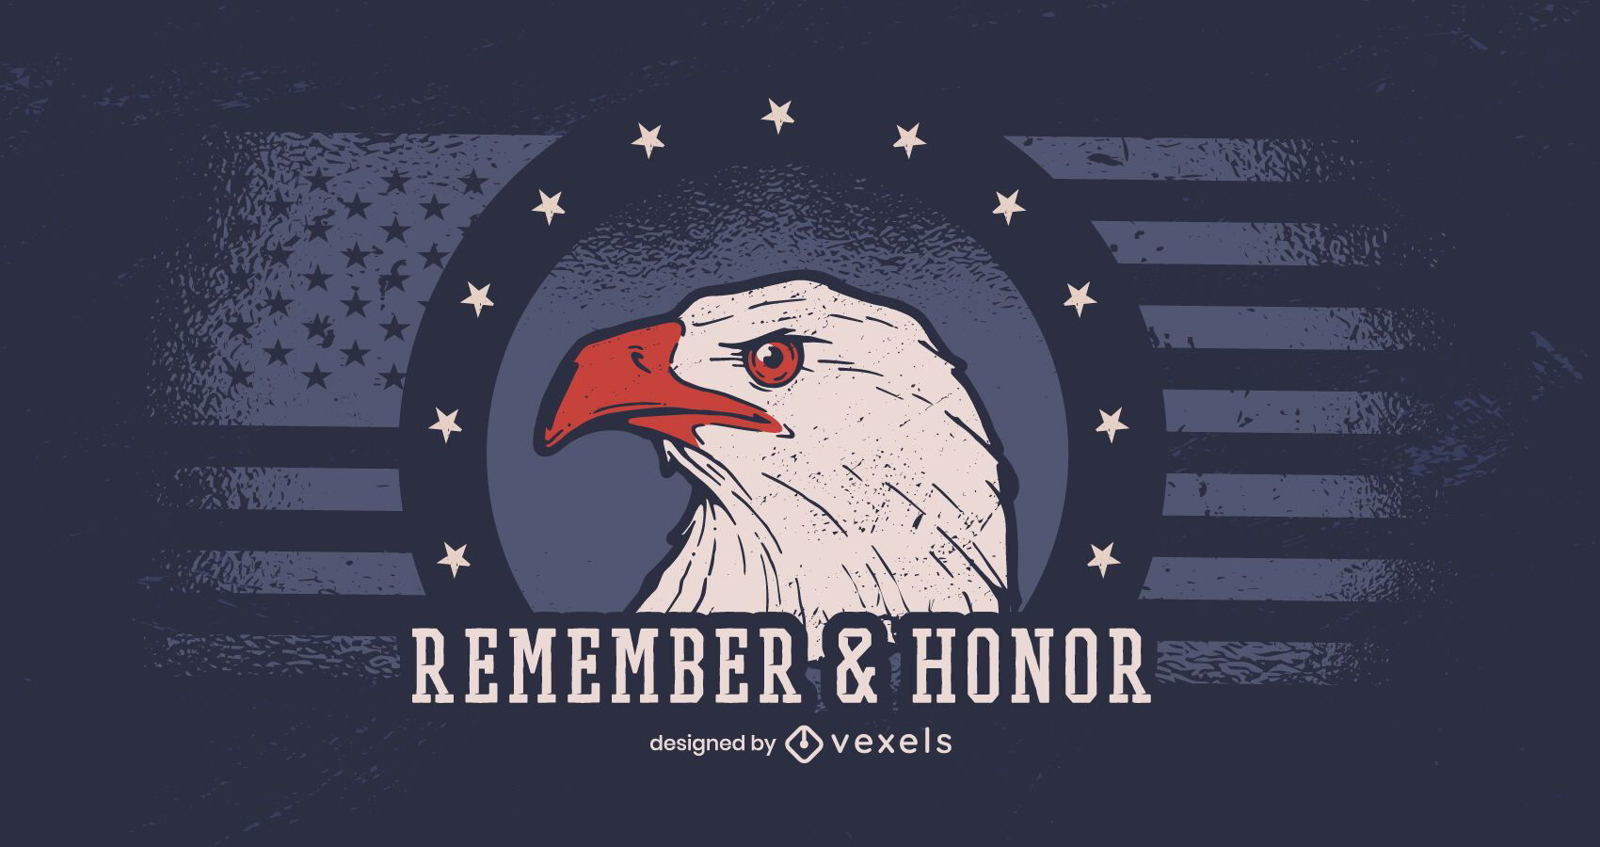 Remember & honor veterans day banner